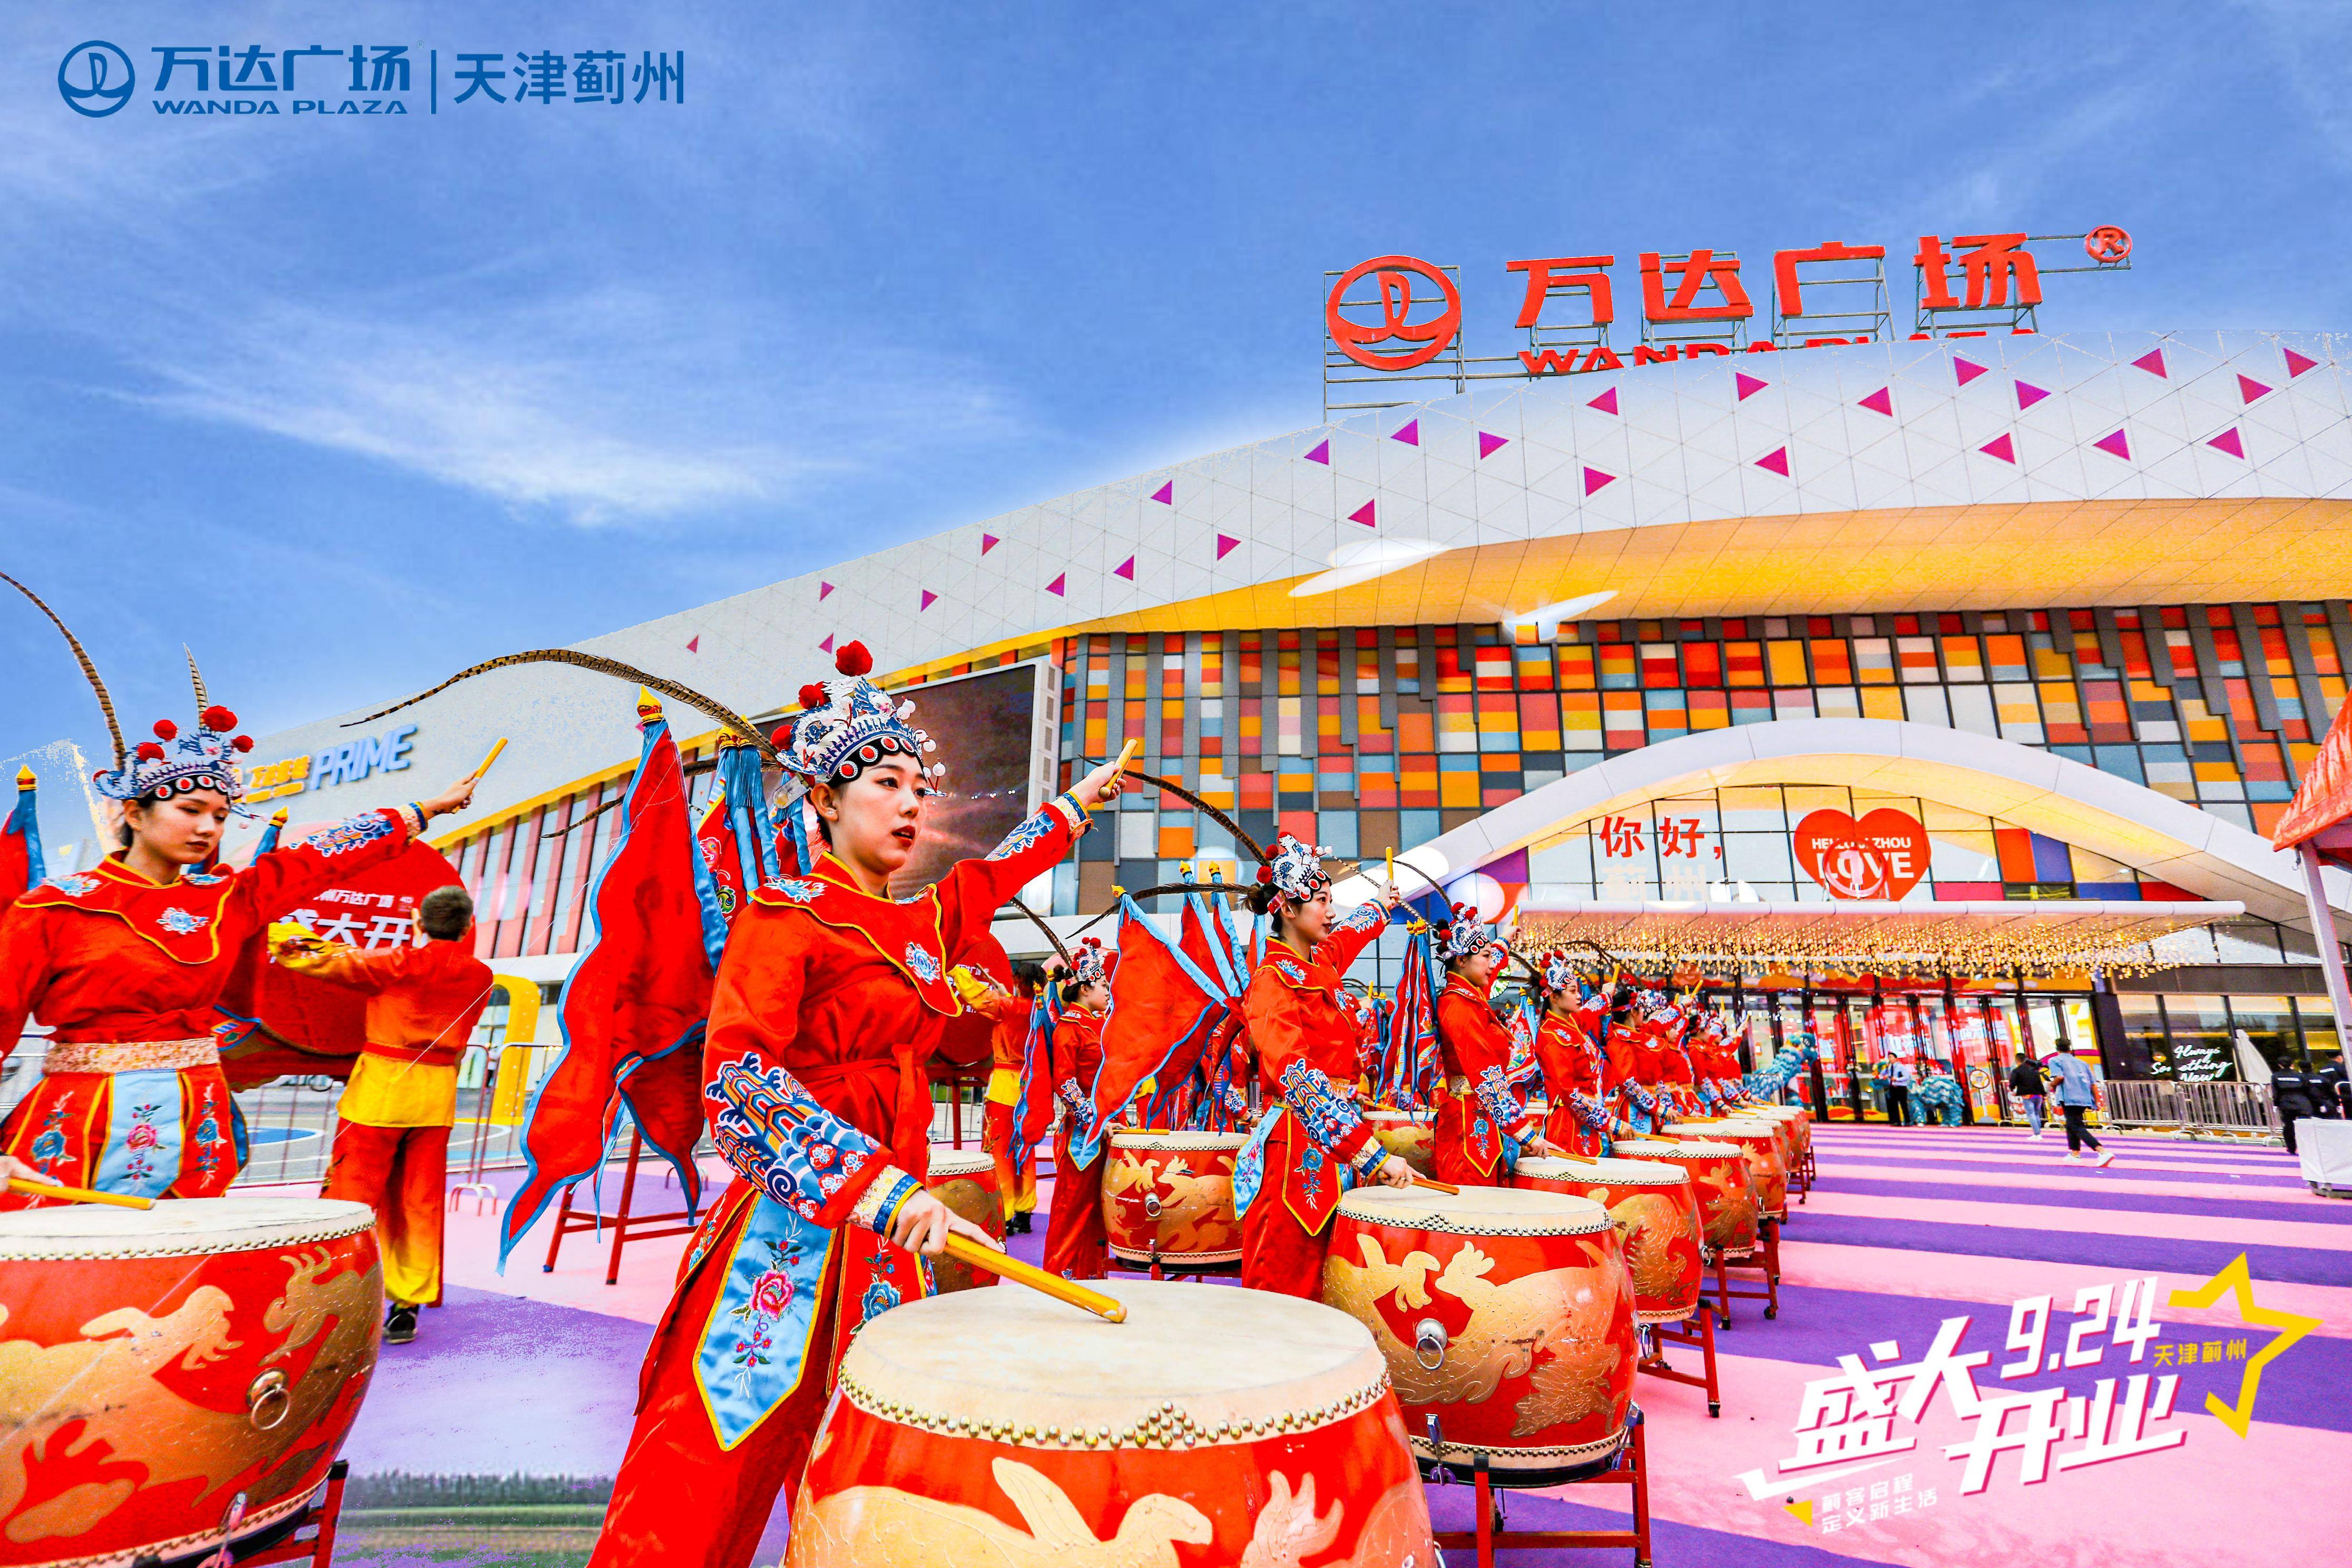 天津蓟州万达广场在建设及开业筹备期间得到了蓟州区政府等各级领导和